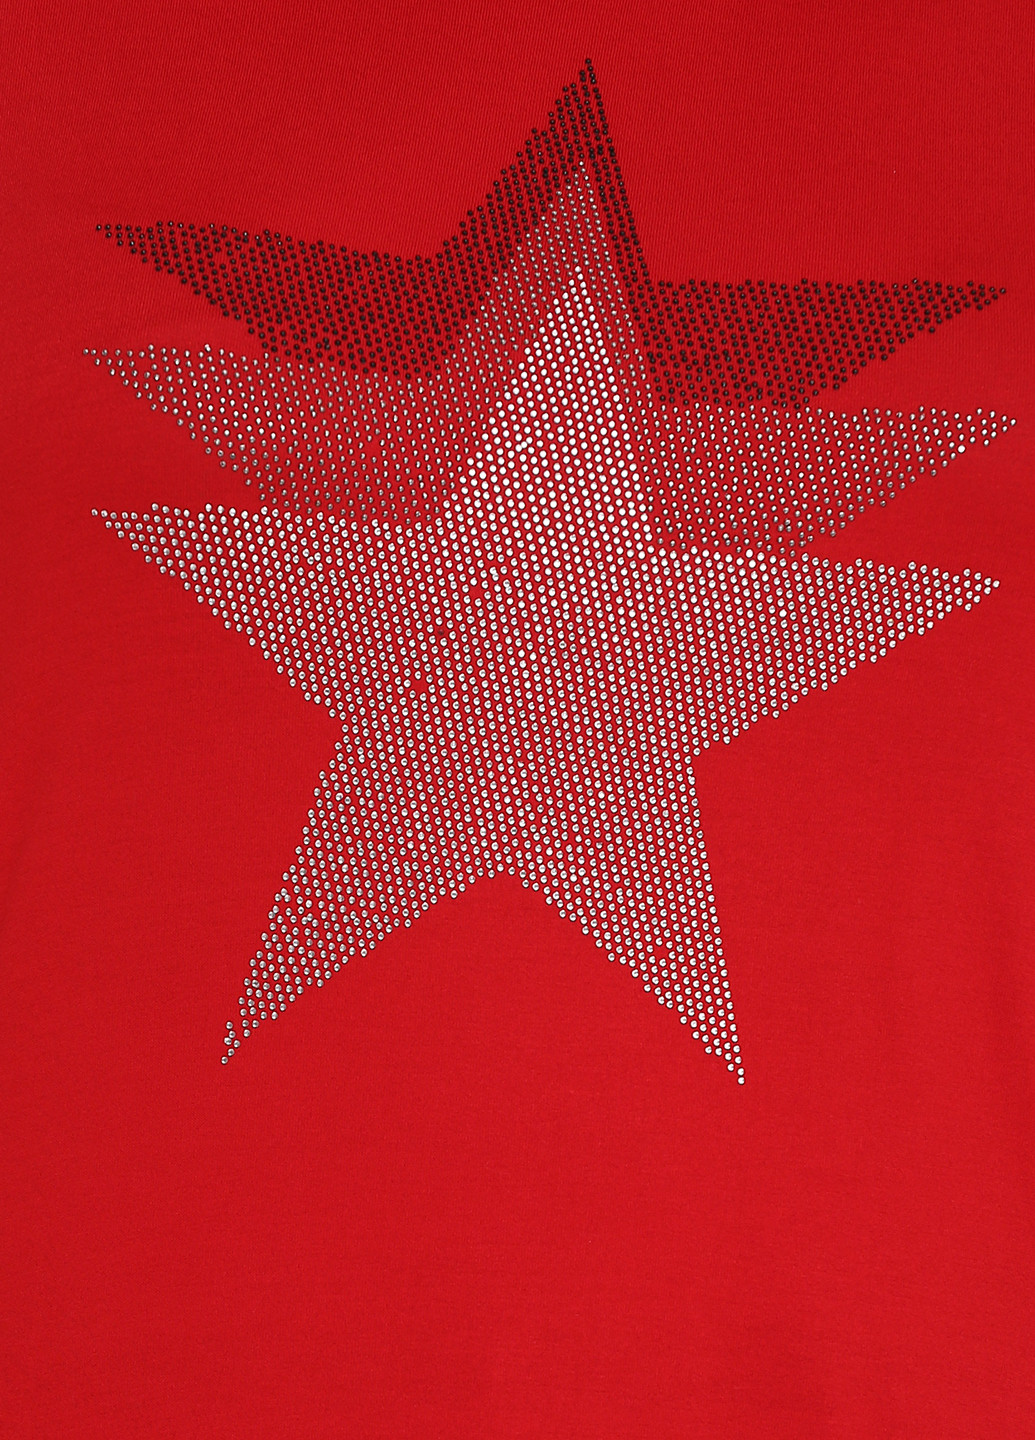 Красная летняя футболка Miss Love